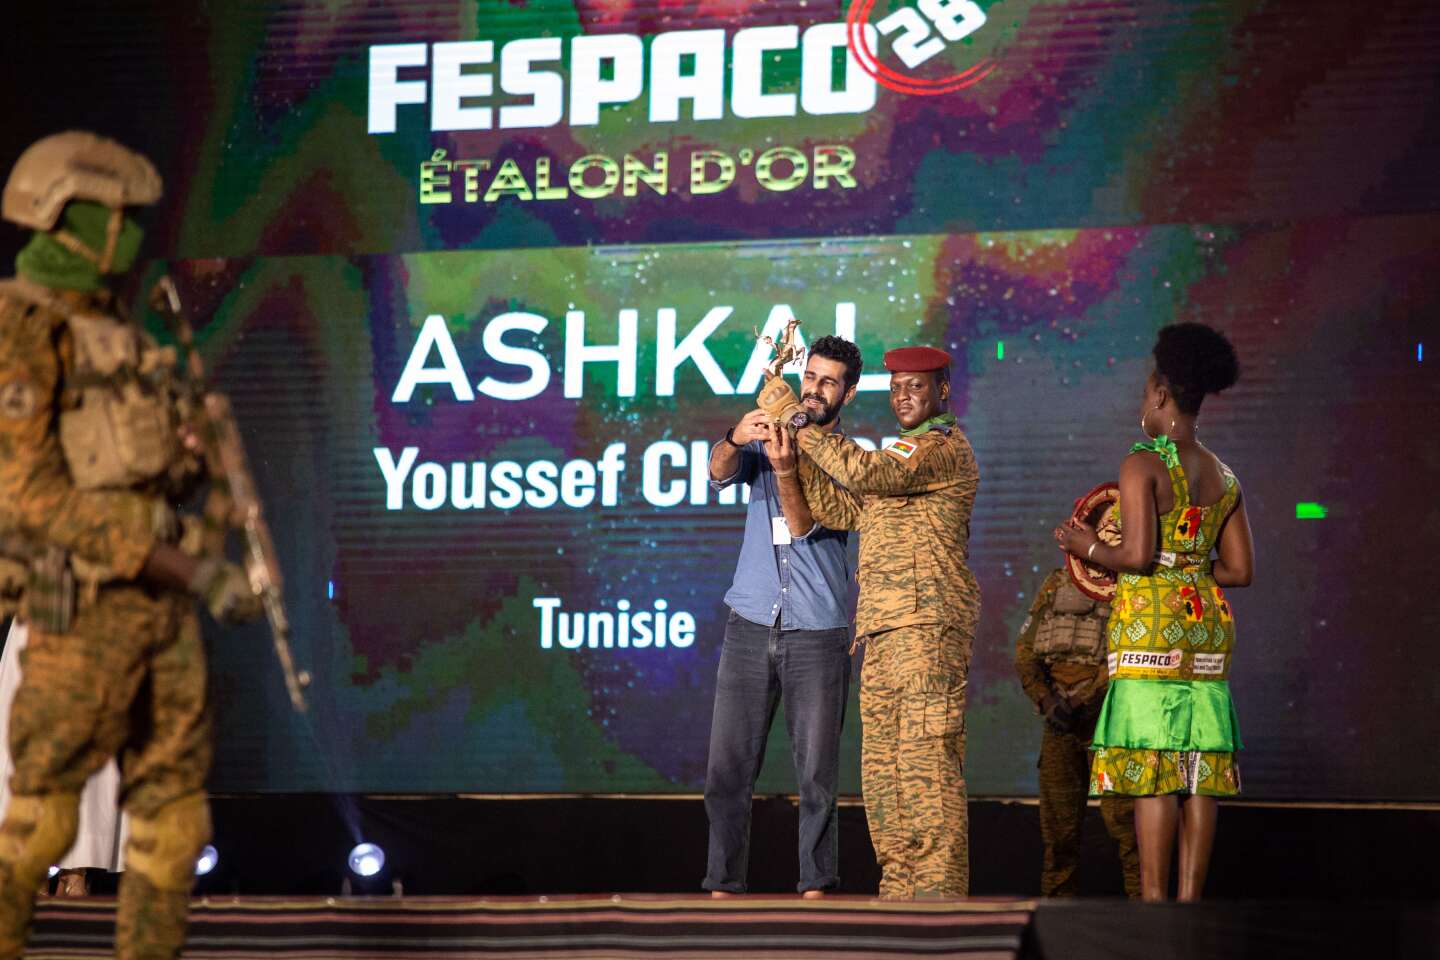 Youssef Chebbi rewarded for “Ashkal” in Ouagadougou, Tunisia triumphs